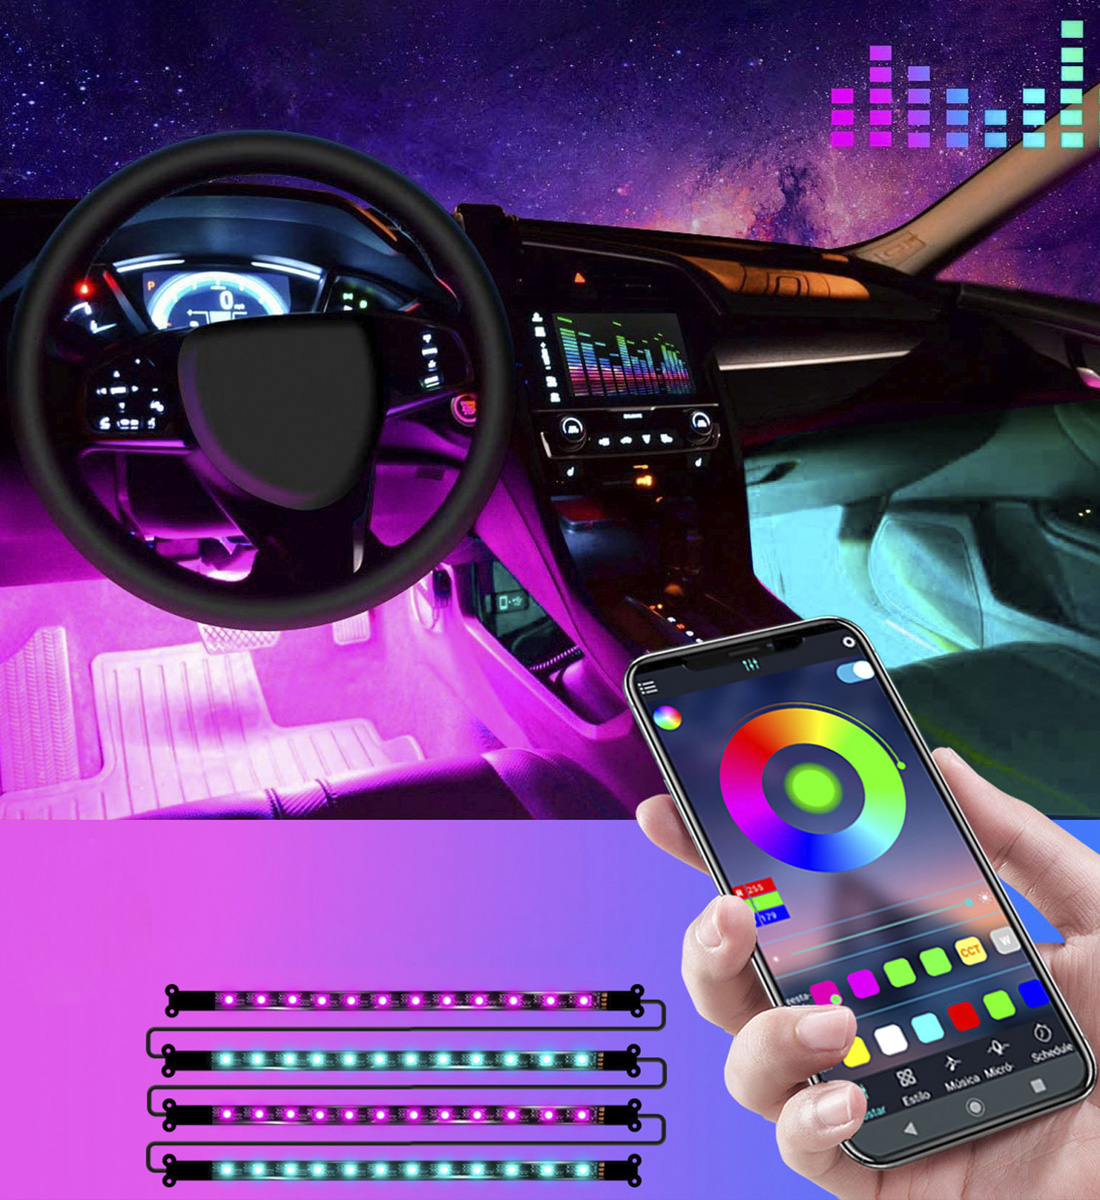 Auto Led Streifen Auto Interieur Led 4pcs 48 LEDS Multicolor RGB Auto Musik  Schlagen LED Lichtleiste, Ambiente